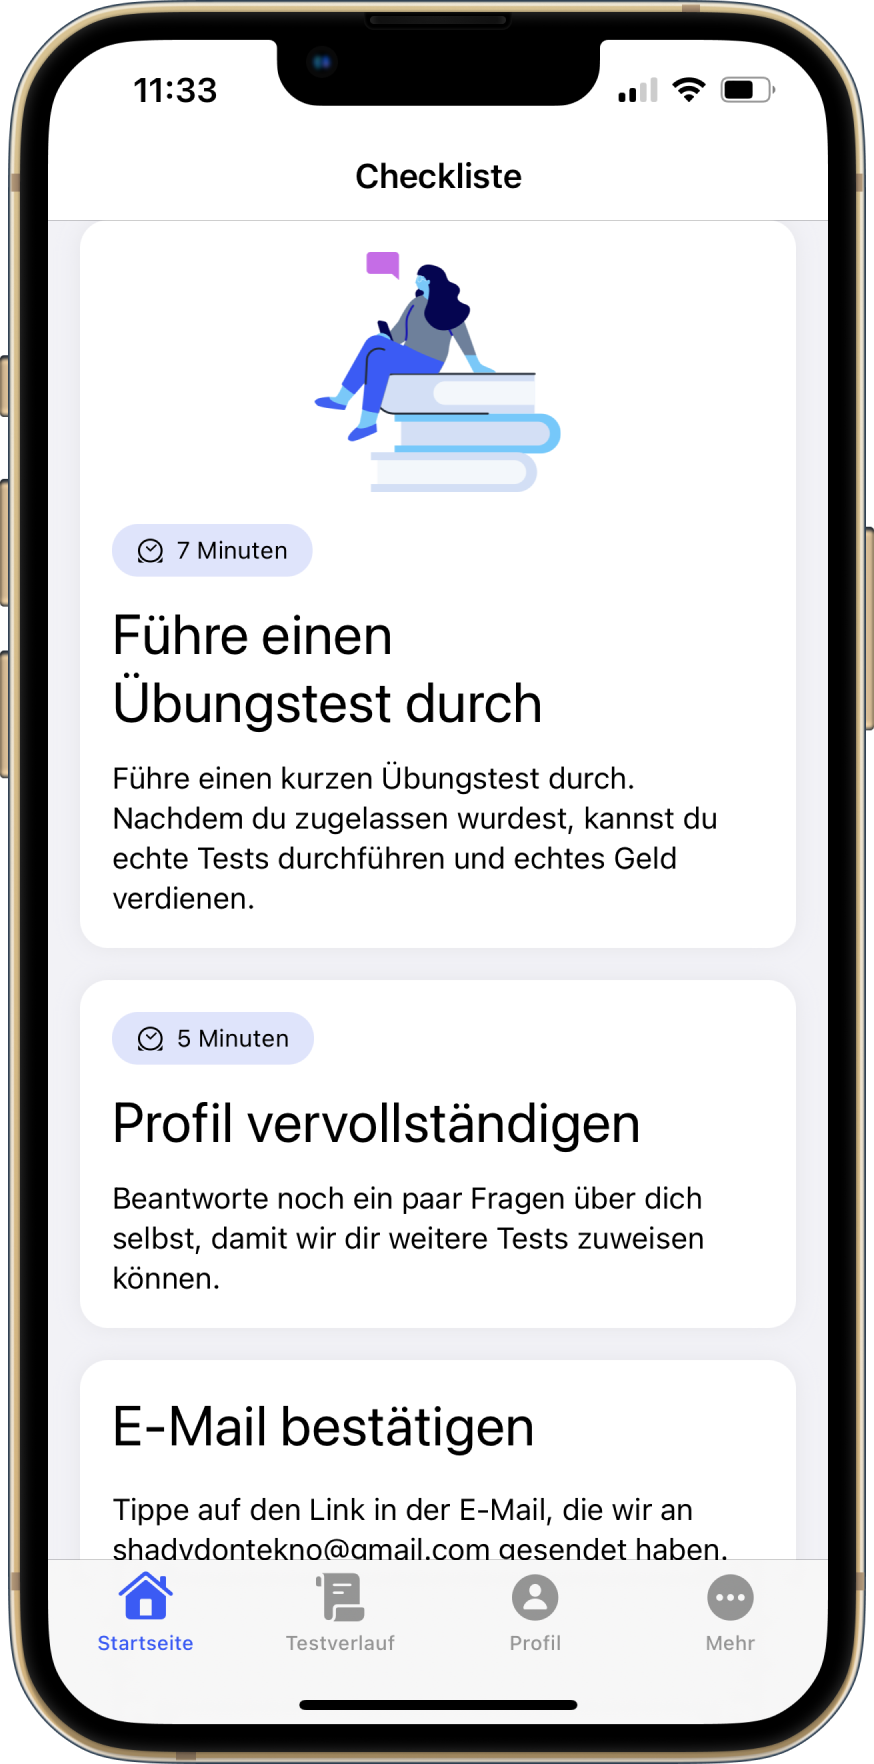 Eine Reihe von Kacheln auf dem Dashboard der mobilen App. Jede Kachel enthält eine Handlungsaufforderung und eine Beschreibung und stellt einen Schritt dar, der für die Einrichtung Ihres Kontos erforderlich ist.